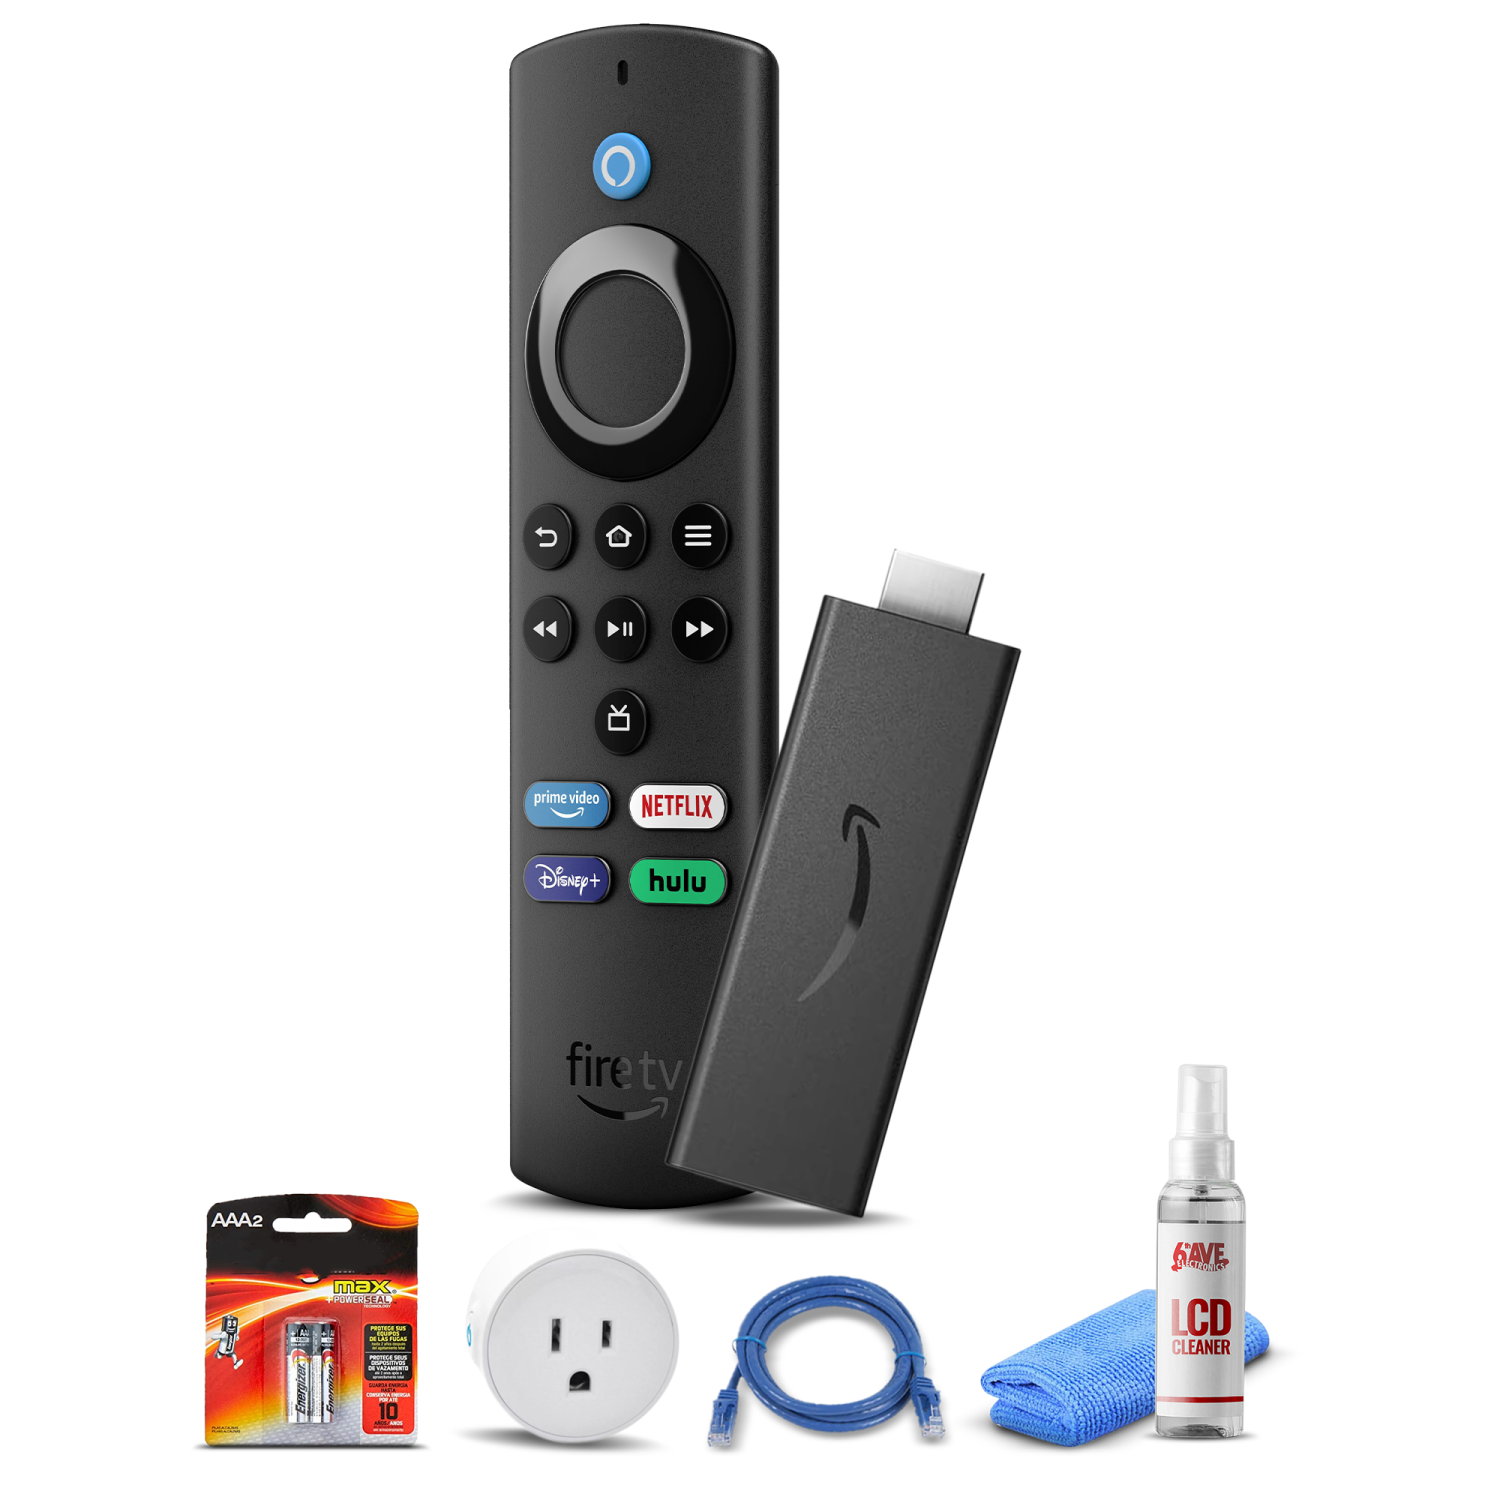 Amazon Fire TV Stick 4K Max + Smart Plug + Cat5 Cable + Batteries Bundle